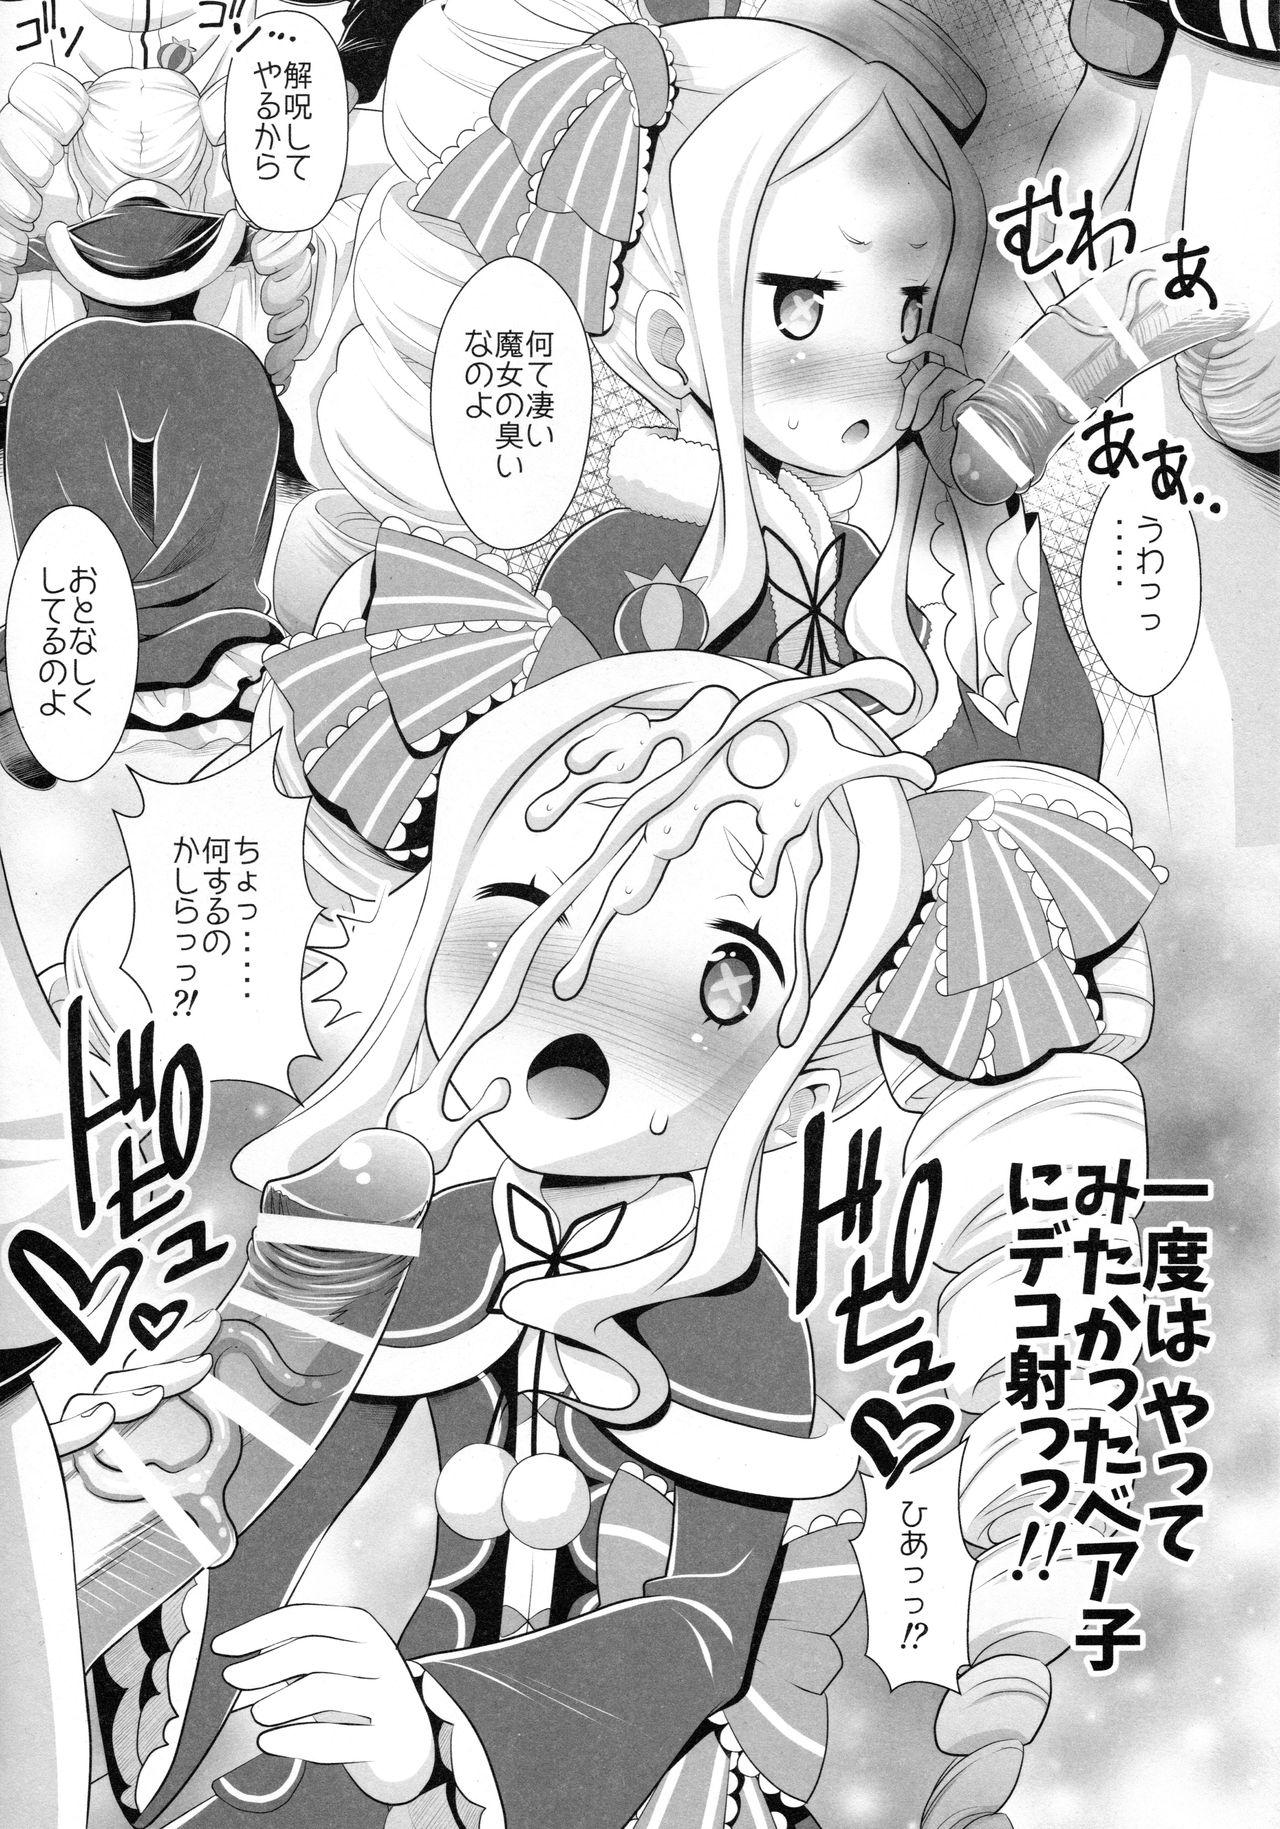 Piss Re:Zero na Maid-san - Re zero kara hajimeru isekai seikatsu Milfporn - Page 9